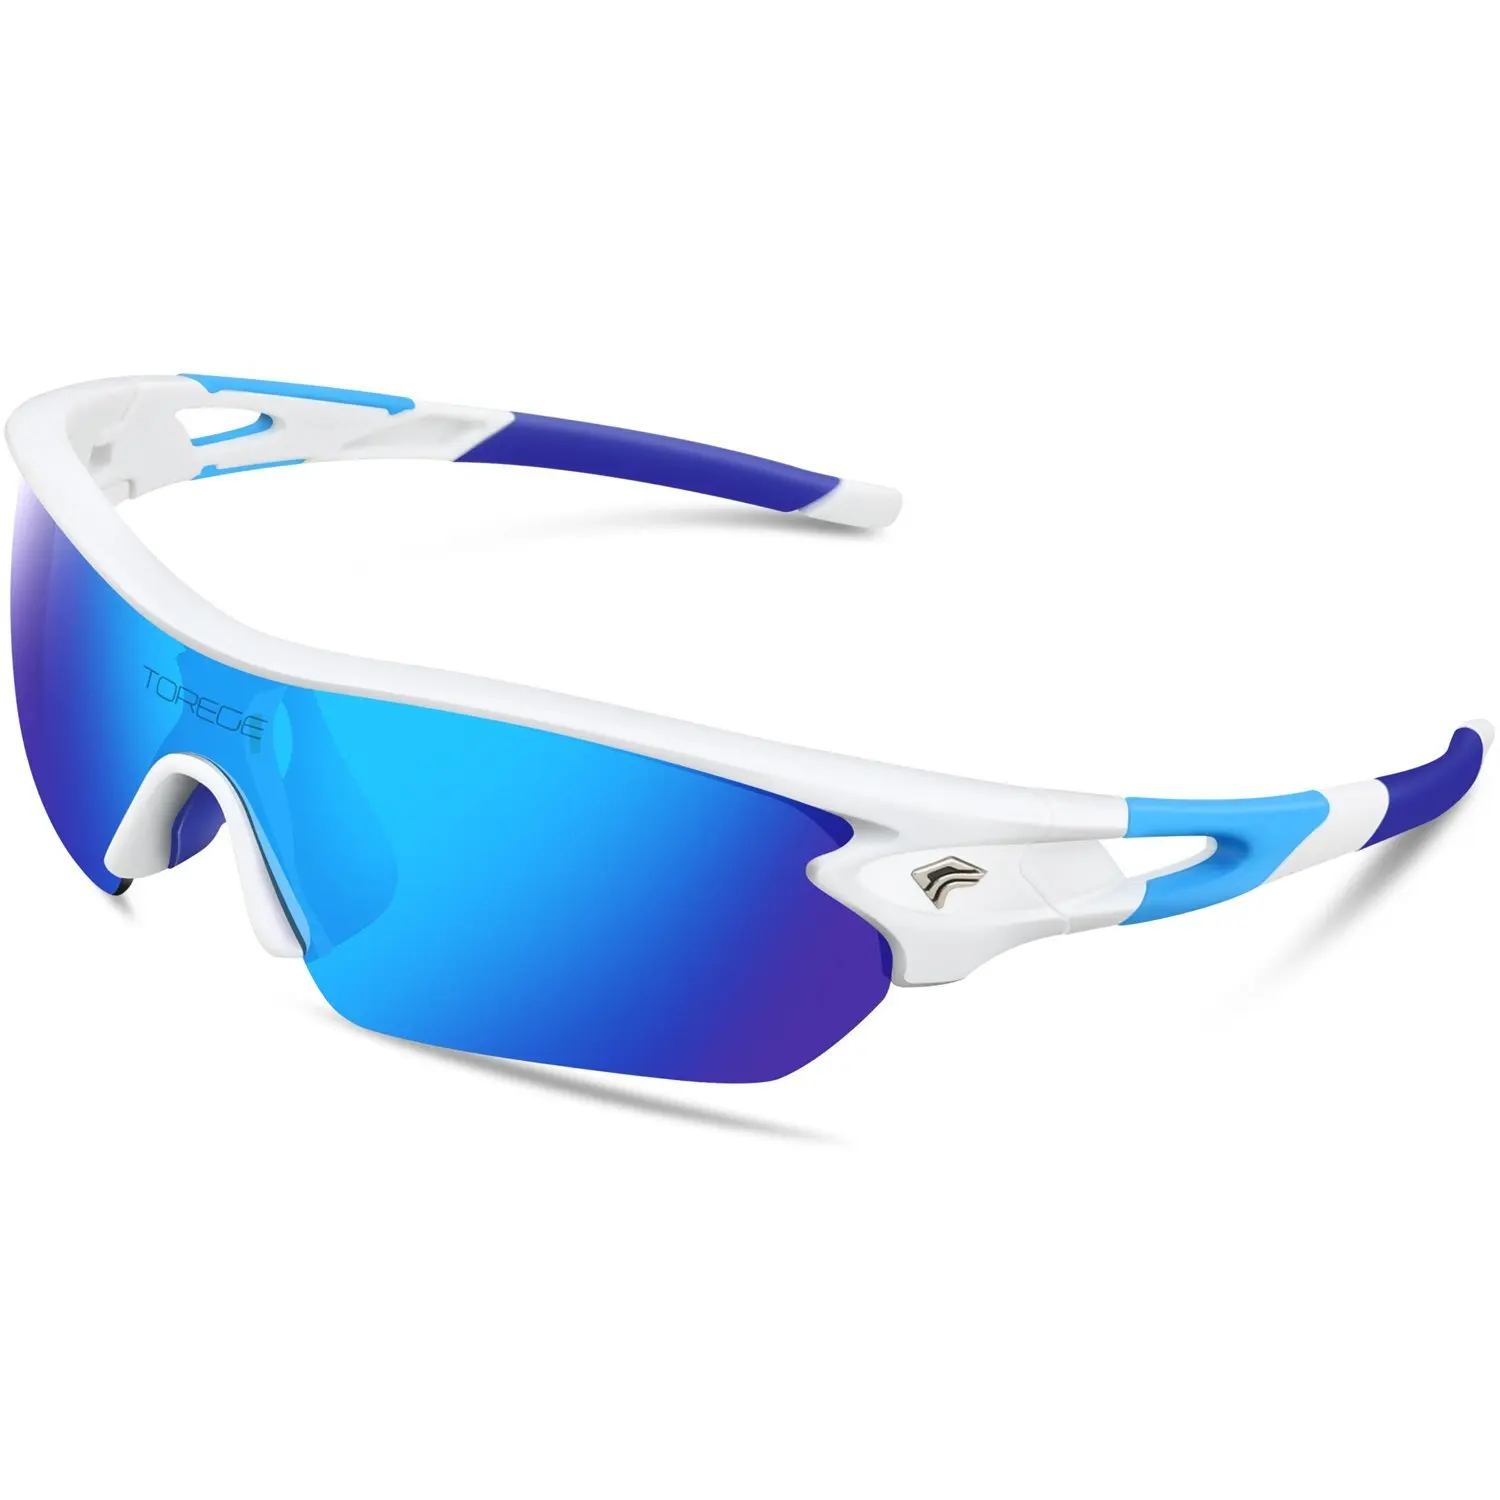 Спортивные очки поляризованные очки для Для мужчин Для женщин Велоспорт бег Рыбалка Гольф поляризованные солнцезащитные очки на велосипед Верховая езда UV400 8 цветов, линзы с 5ю категориями защиты - Цвет: Ice Blue